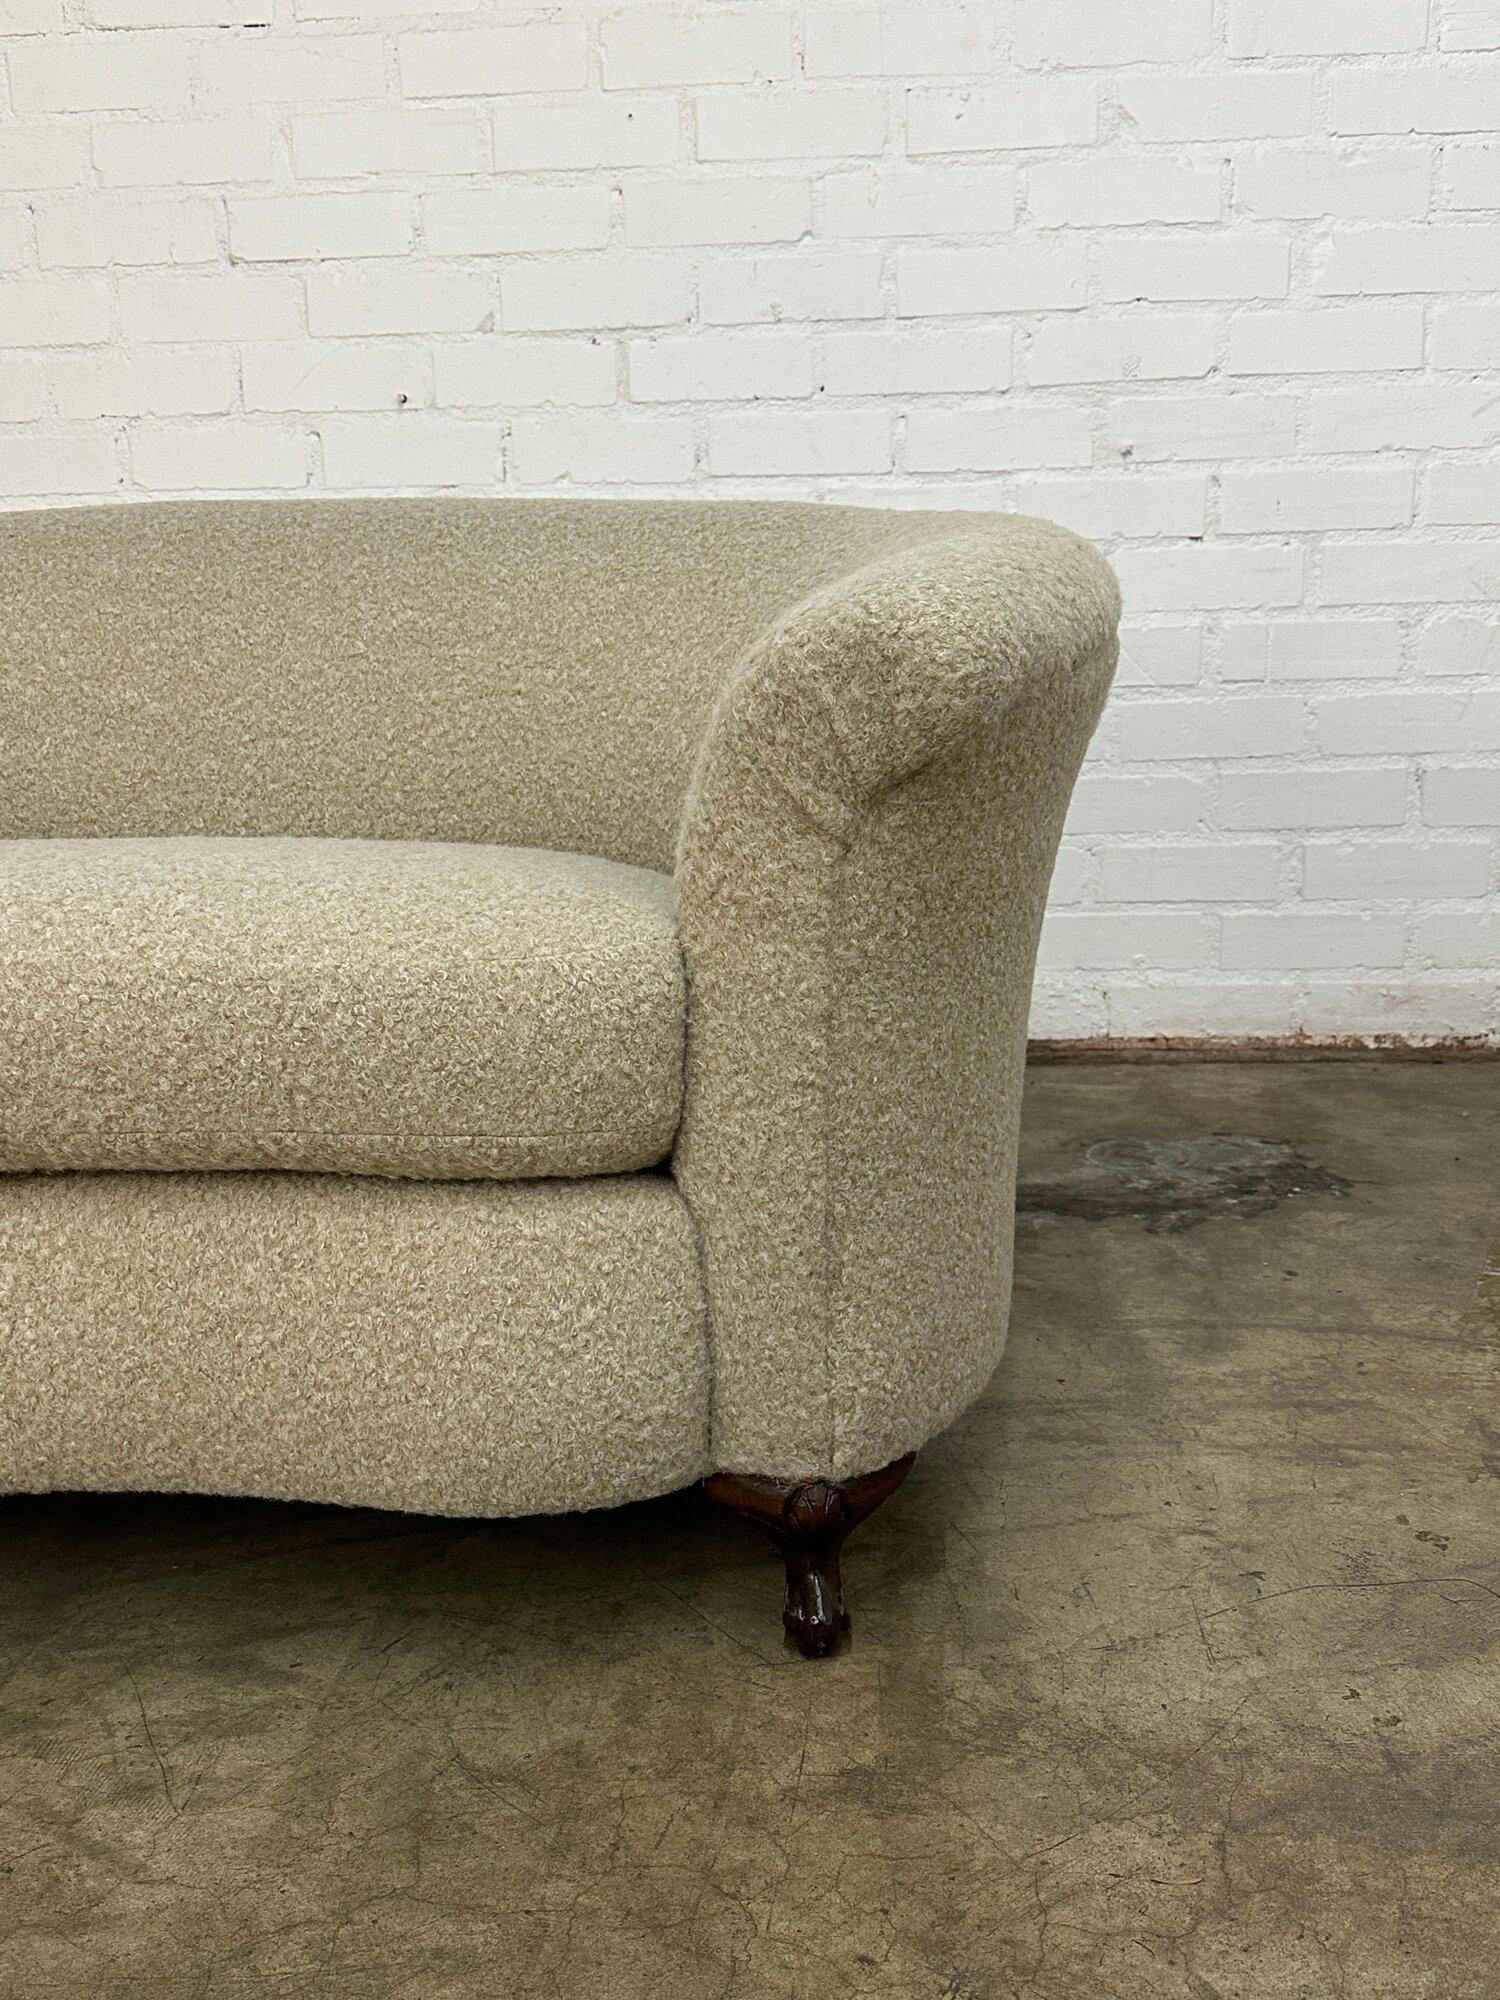 W58 D32 H29 SW35 SD21.5 SH19 AH26

Vintage-Sofa mit gebogener Rückenlehne aus den 1920er Jahren in vollständig restauriertem Zustand. Der Artikel verfügt über neu gestaltete Krallenfüße, frischen Schaumstoff und frischen, gewirbelten beigen